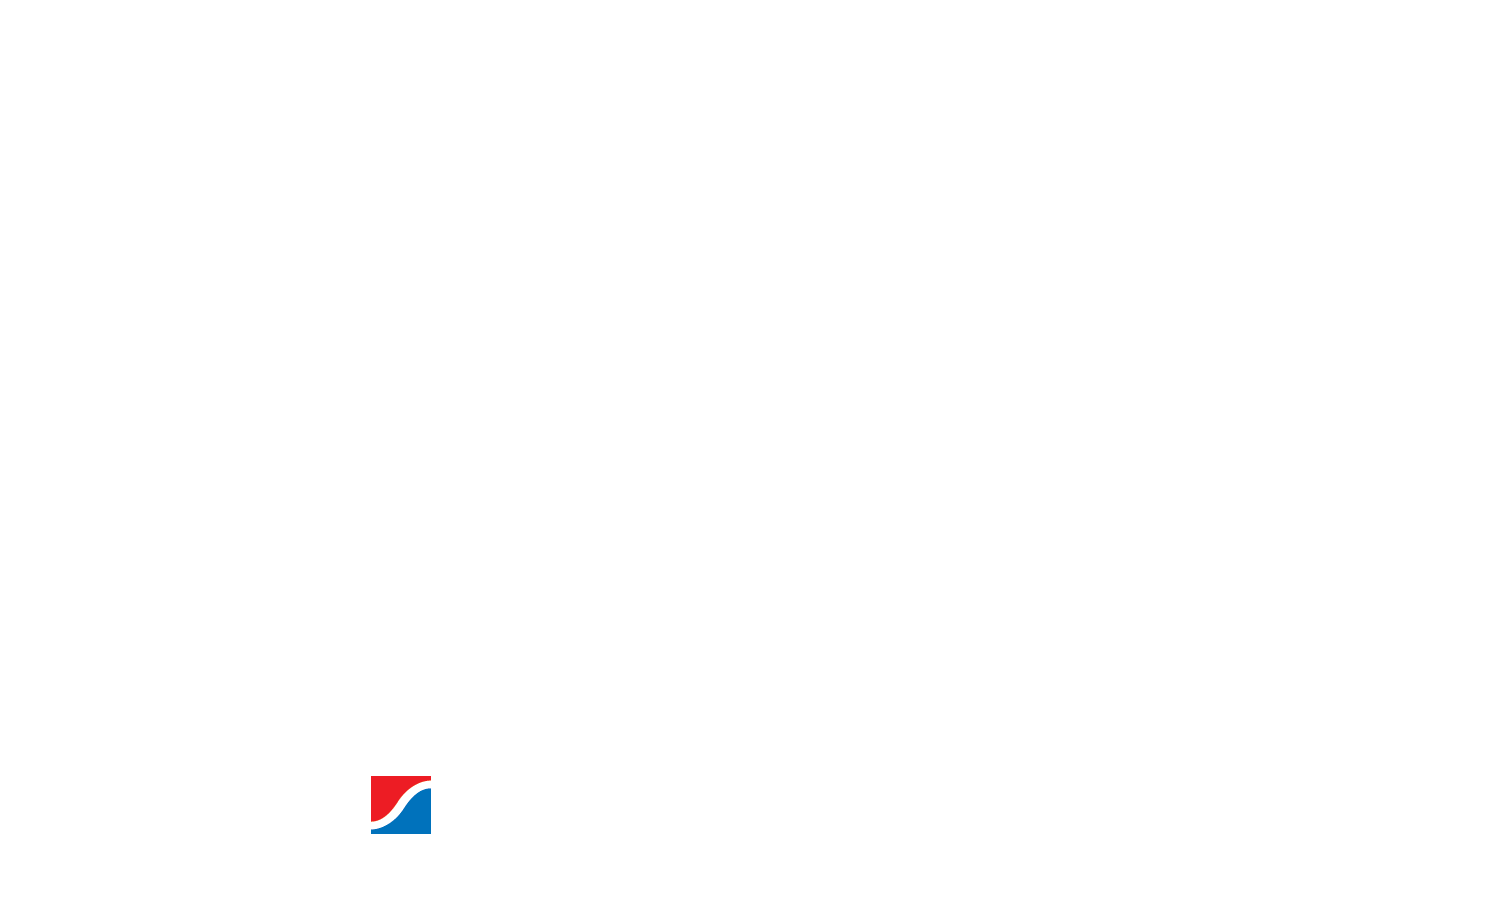 CMC Logo - Custom Milling Center